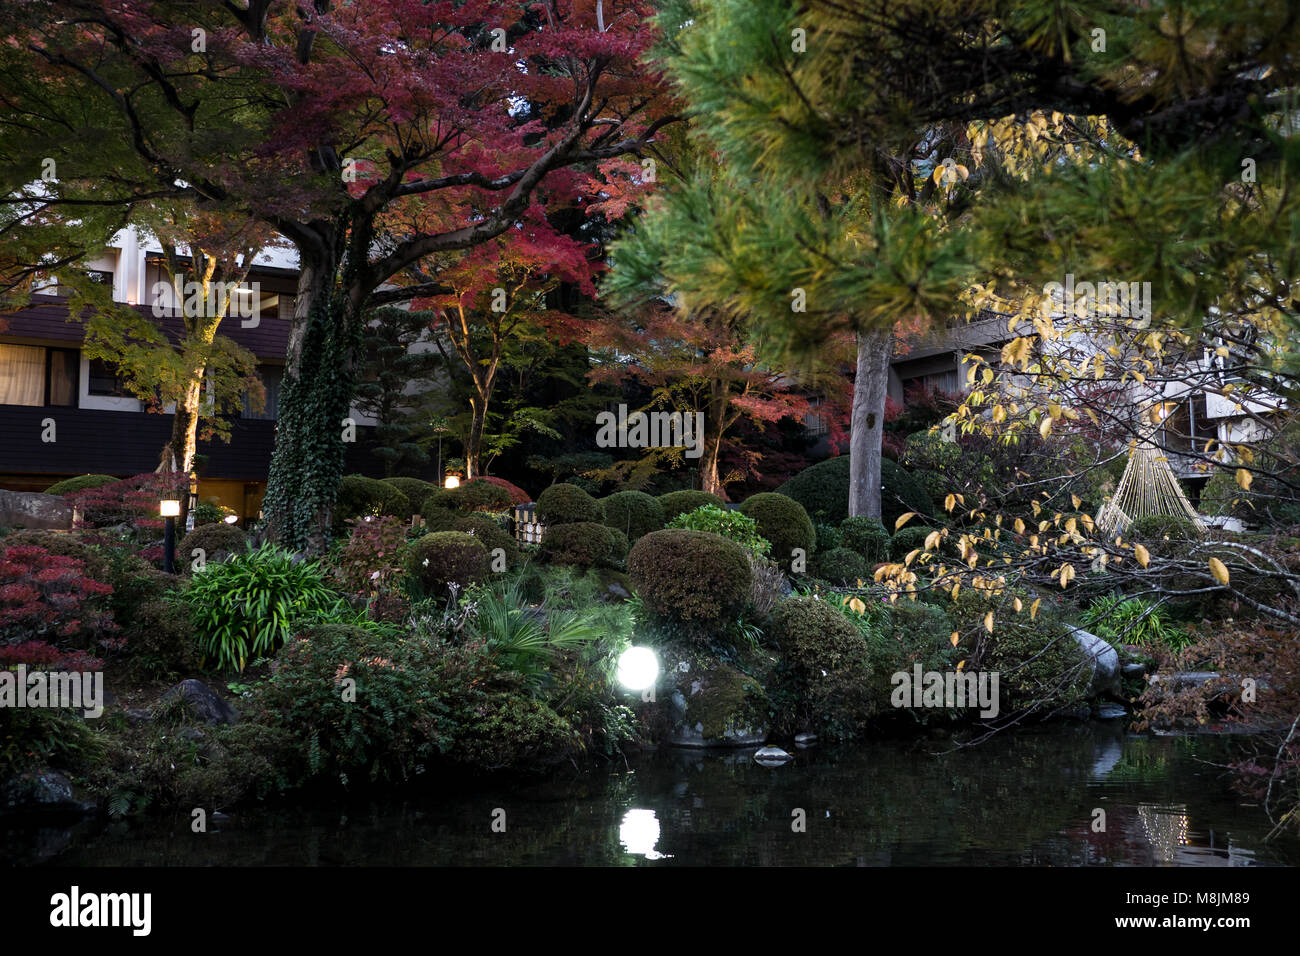 Un jardin japonais avec beaucoup d'aménagement paysager Banque D'Images